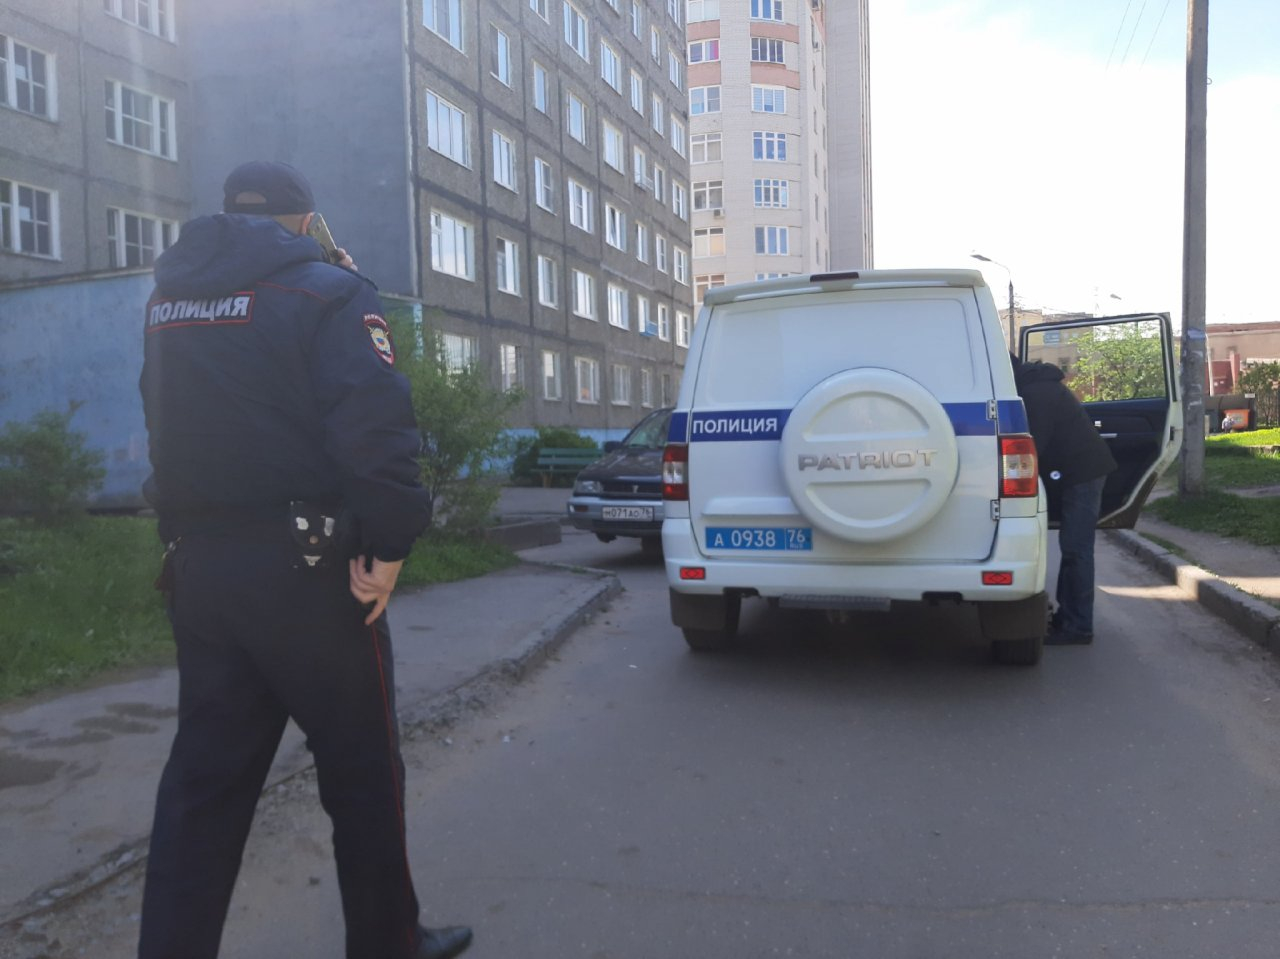 Сломал браслет и исчез: развратник в Ярославле сбежал из-под домашнего ареста